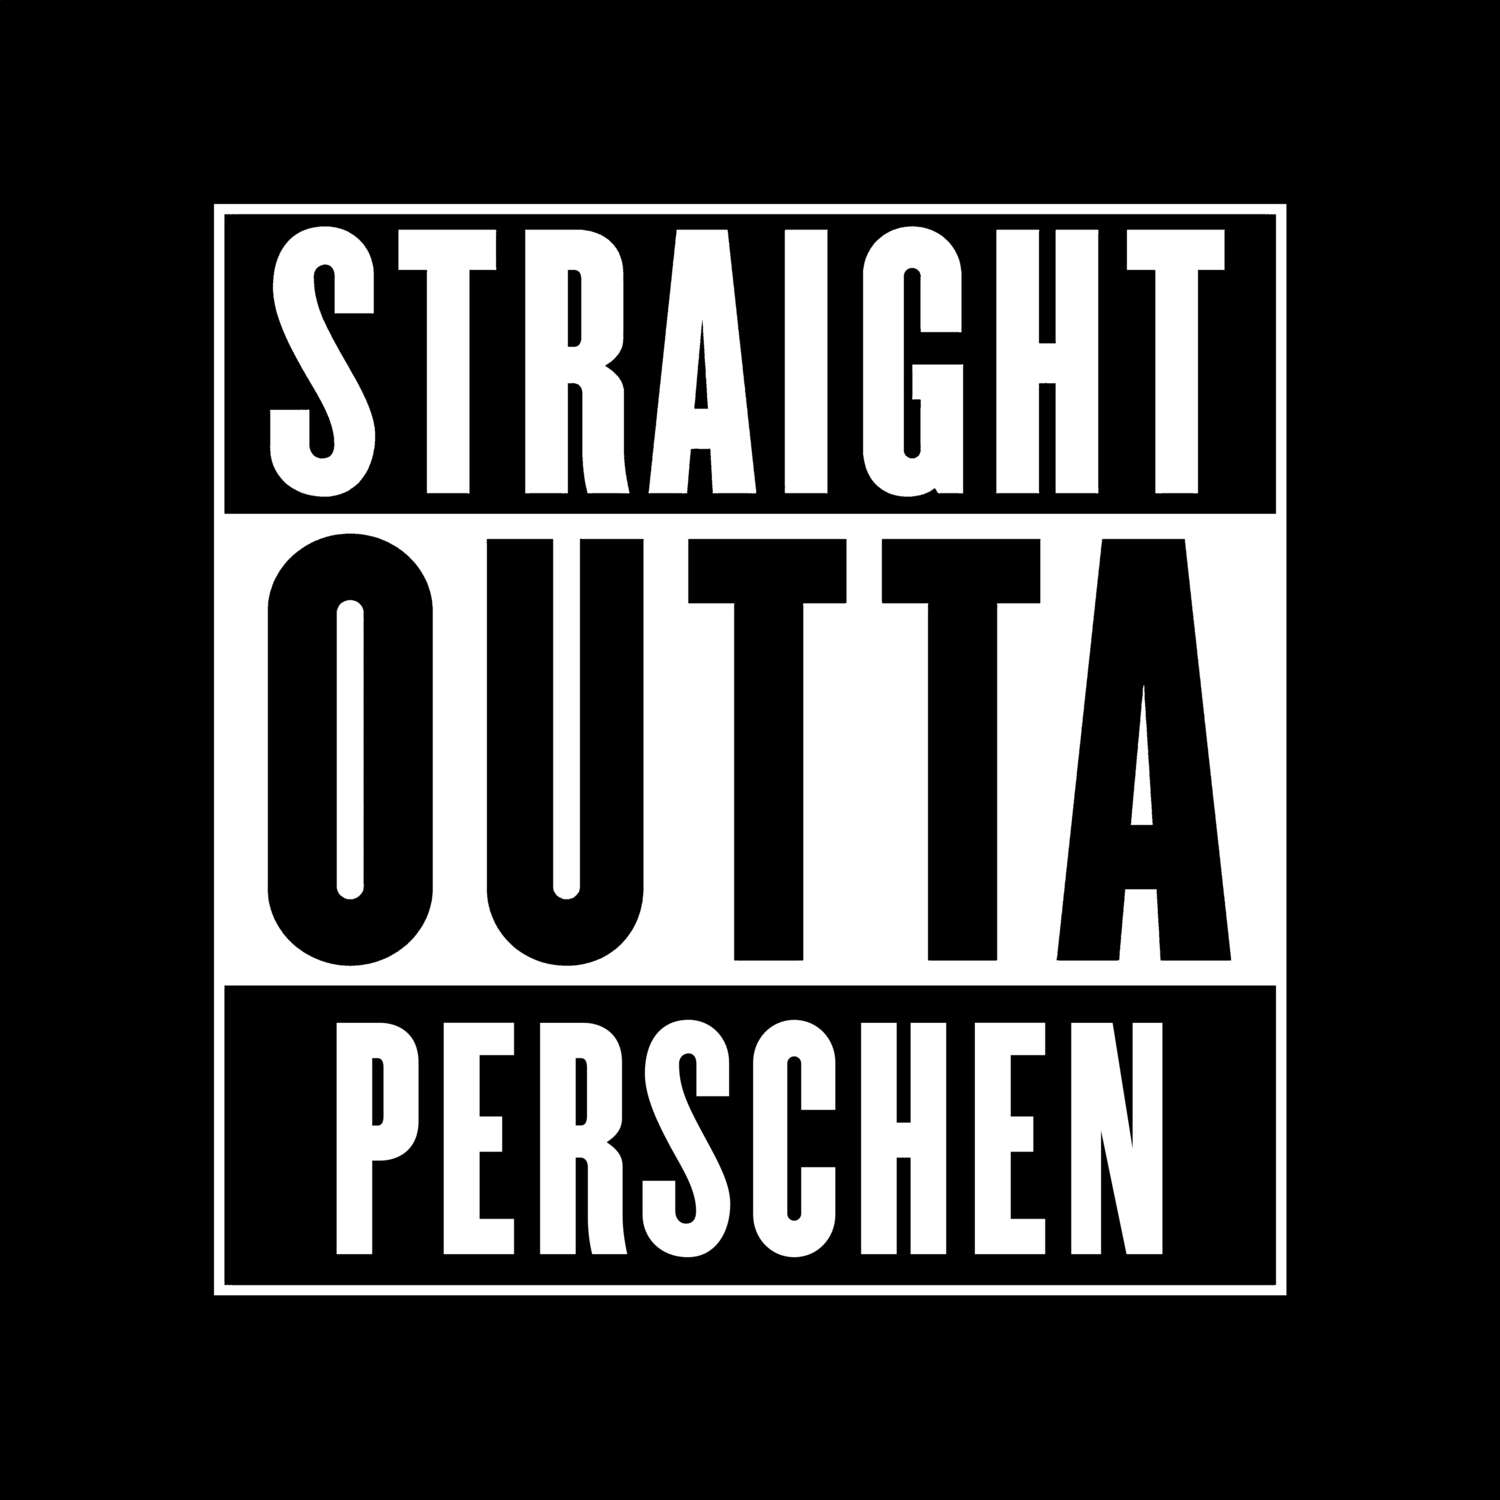 Perschen T-Shirt »Straight Outta«